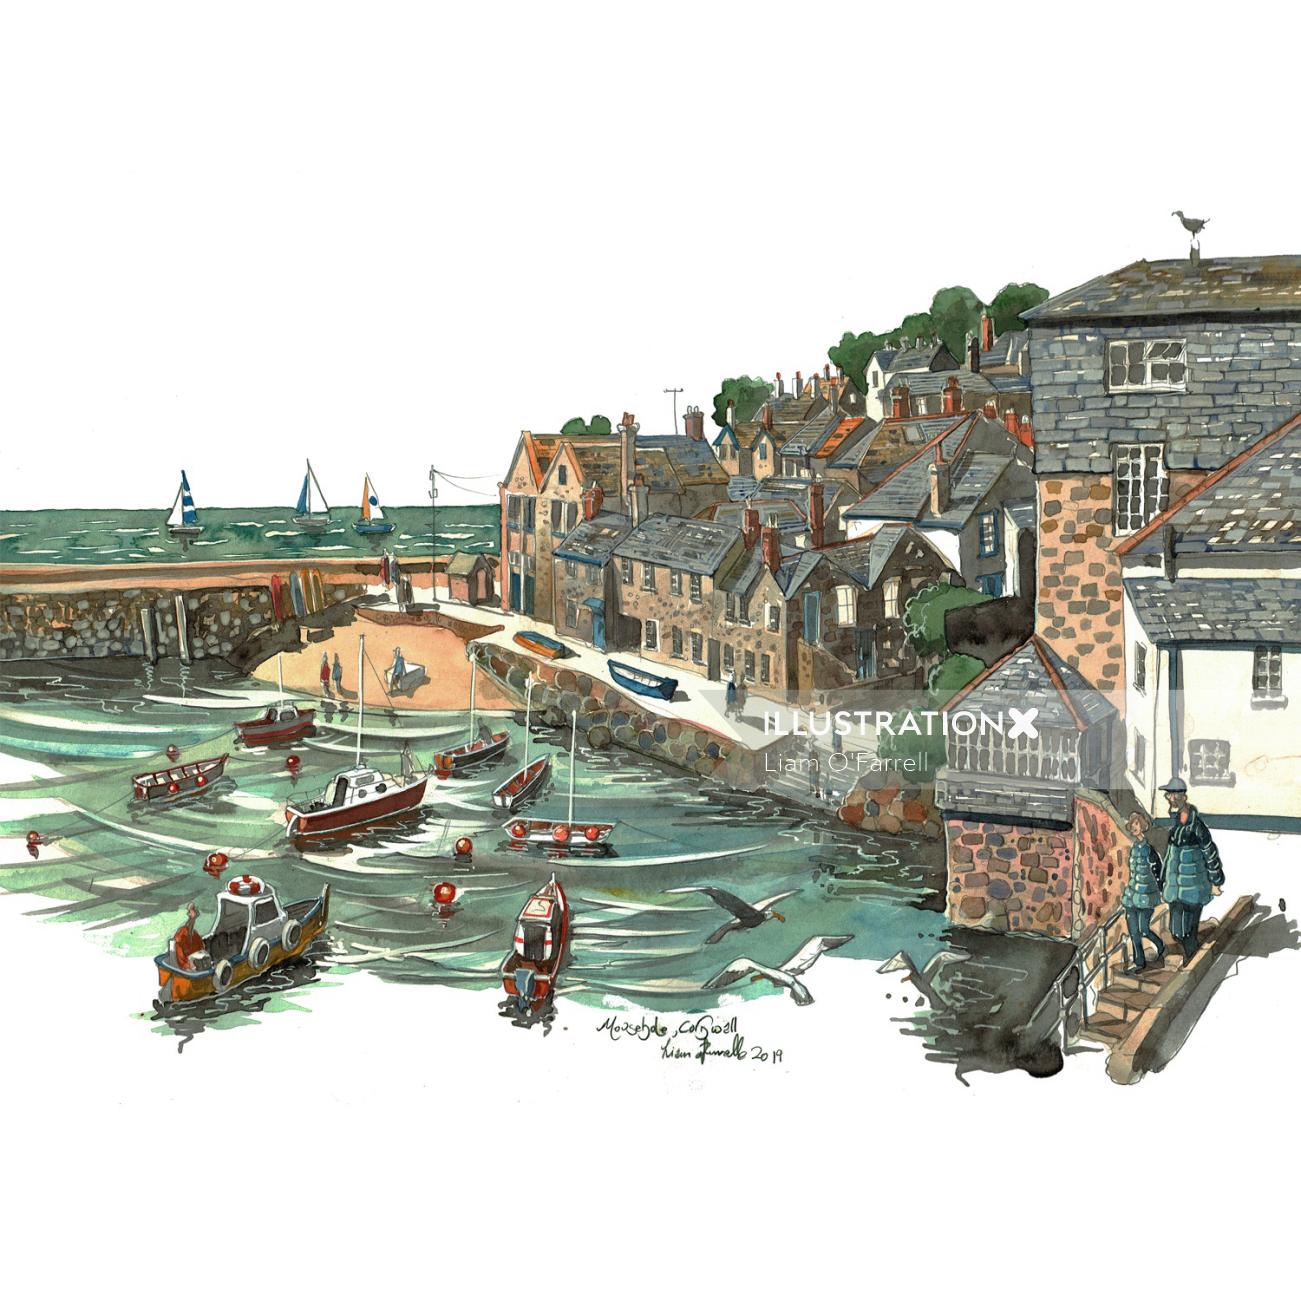 Liam O' Farrell Illustrates the Mousehole Harbor, Cornwell